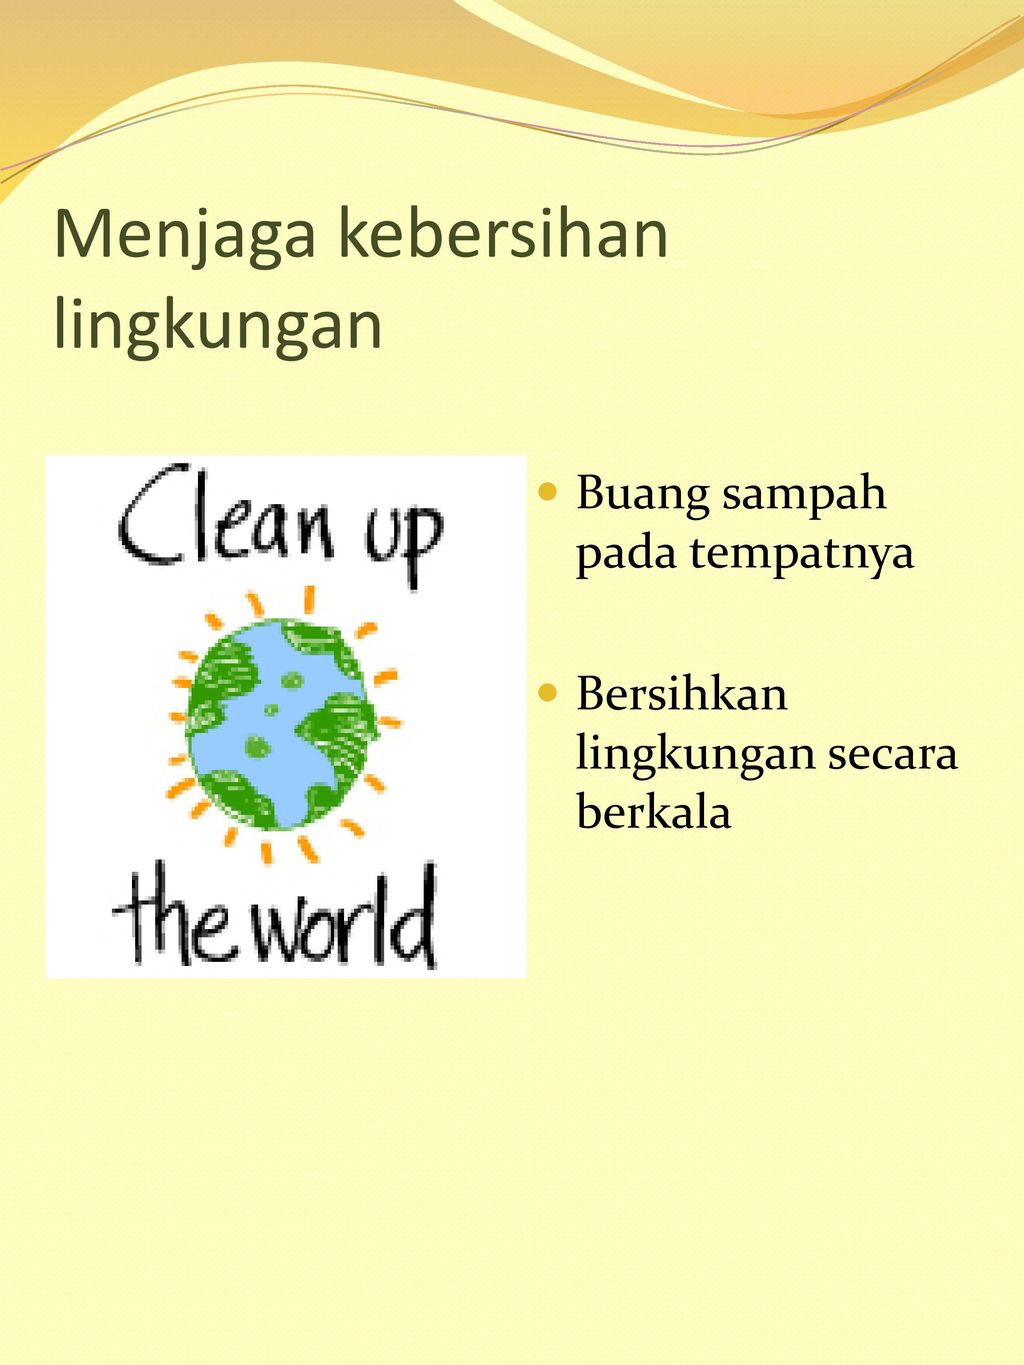 Menjaga kebersihan lingkungan